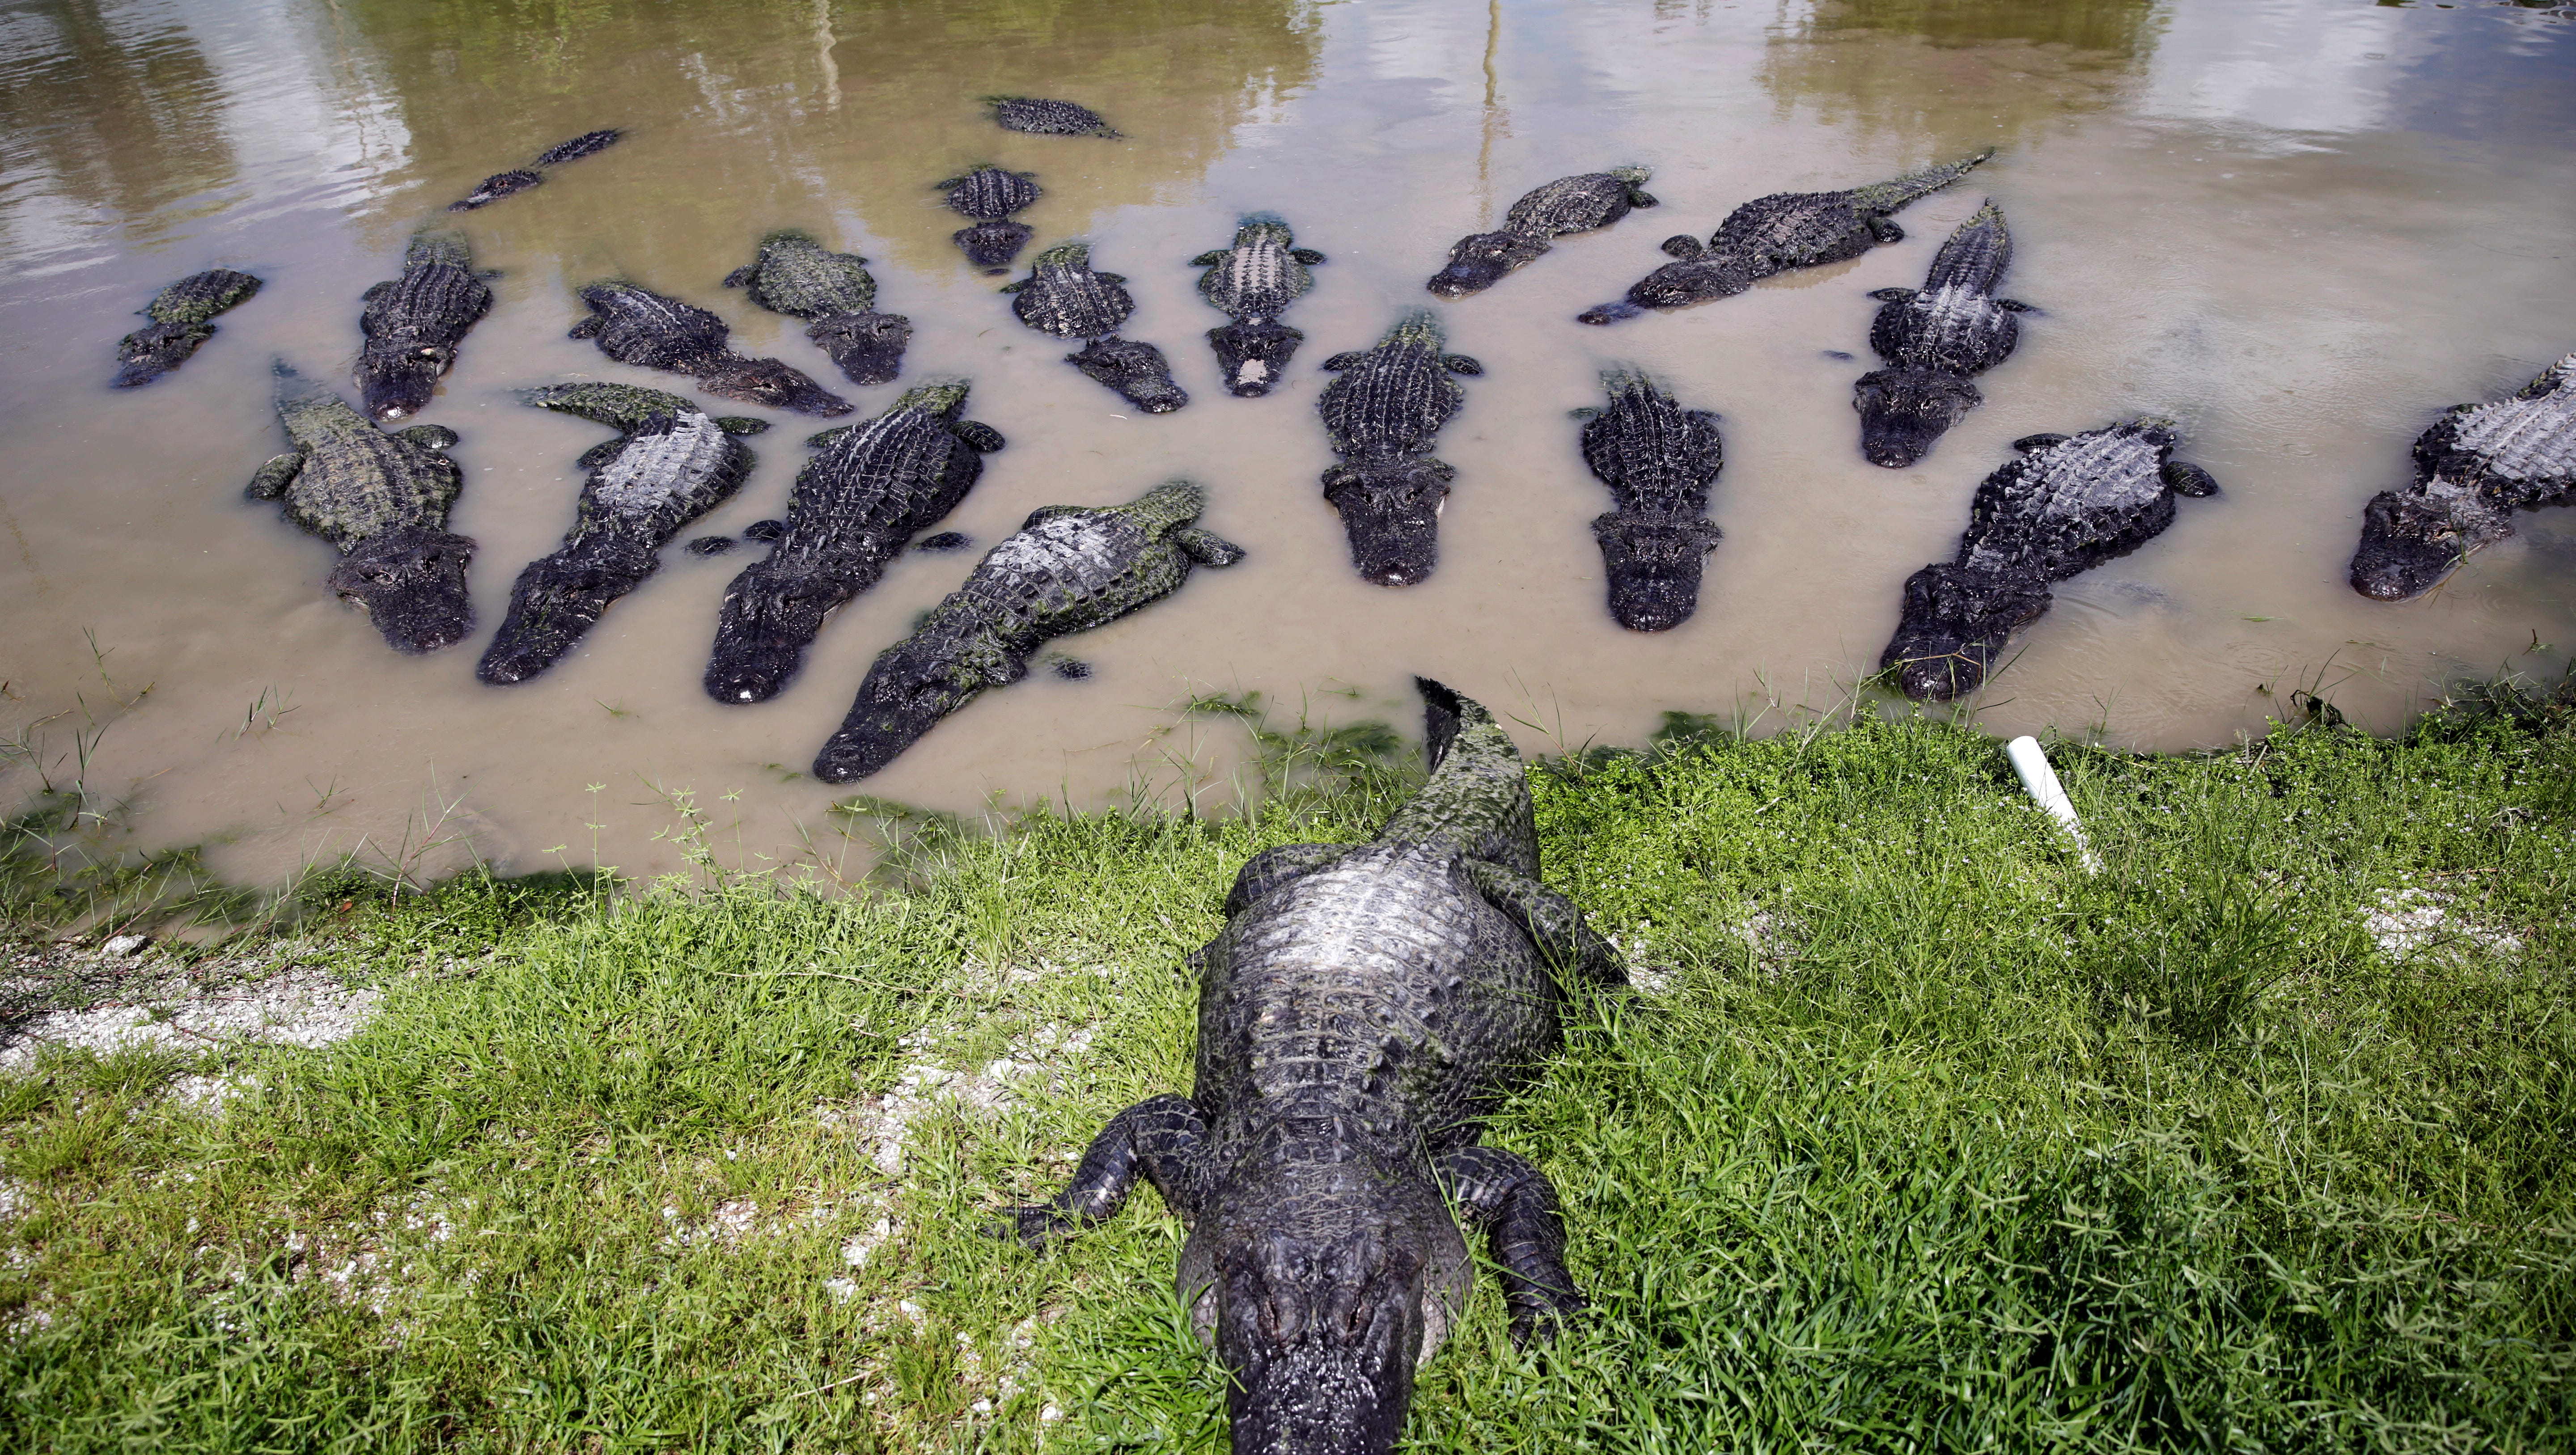 Where Are the Alligators in Florida?